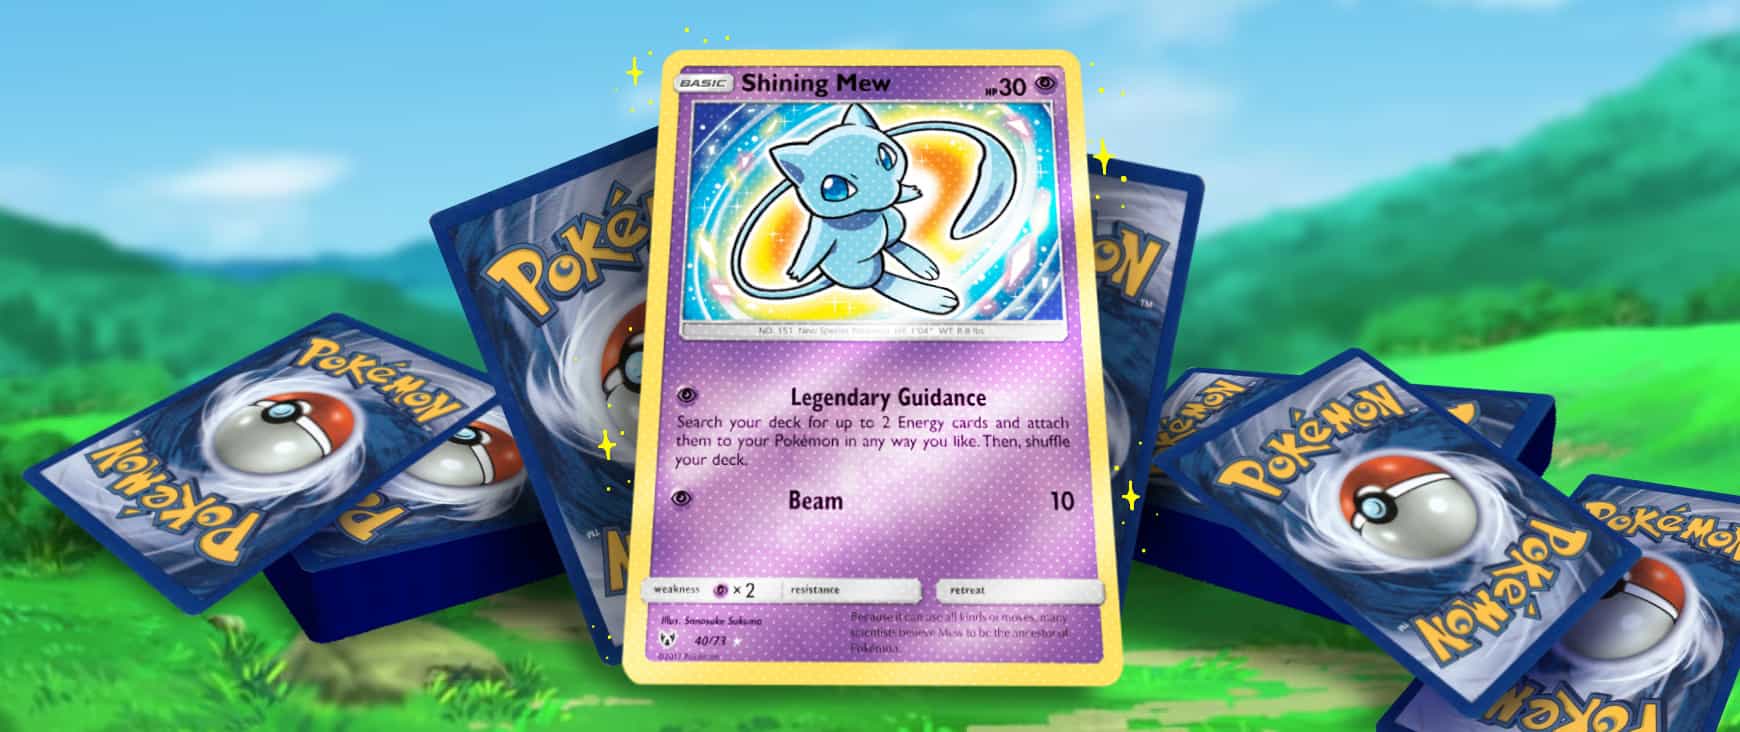 Odds of finding Shiny Pokémon cards